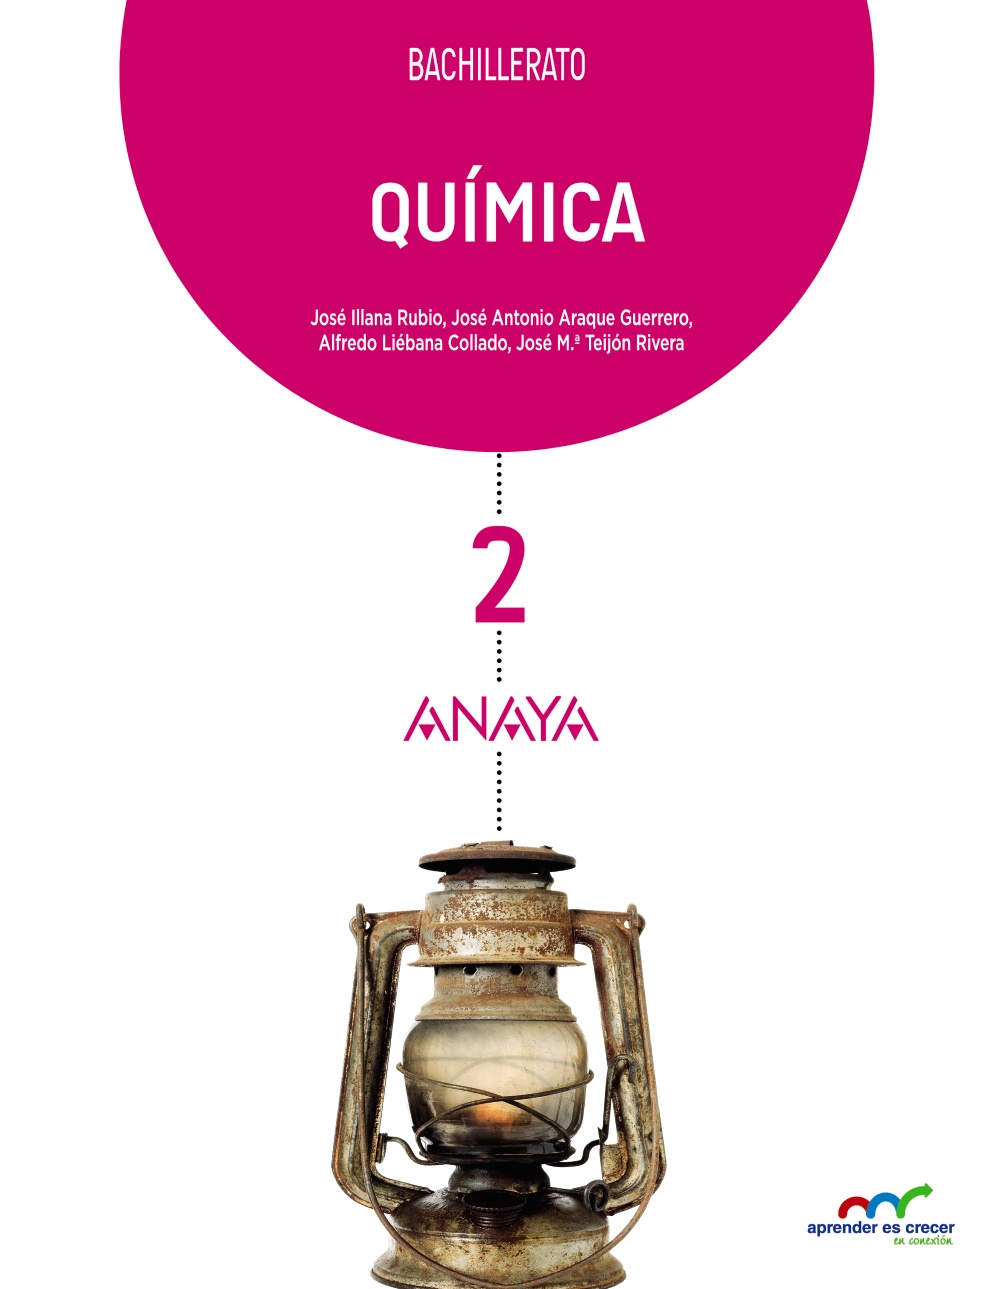 Solucionario Quimica 2 Bachillerato Anaya Aprender es Crecer PDF Ejercicios Resueltos-pdf